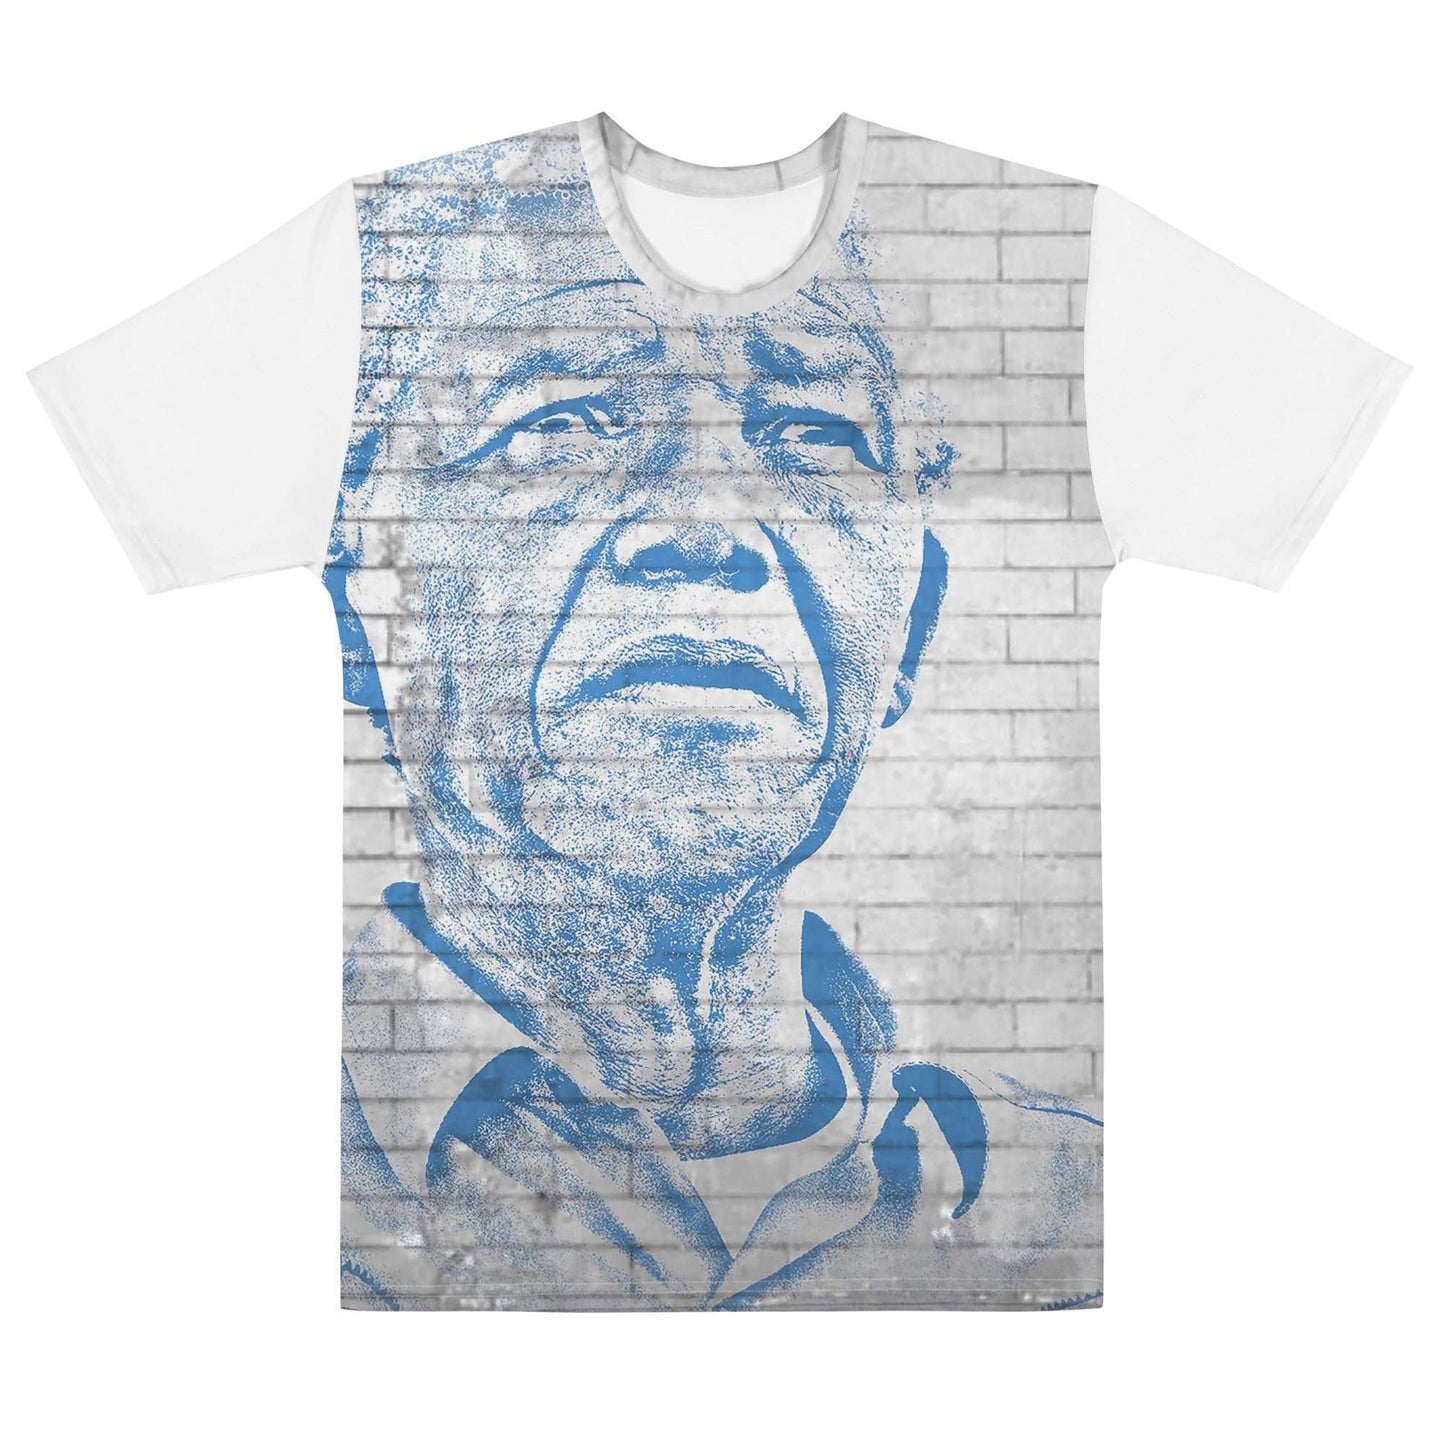 Nelson Mandela All-Over Print Men's Crew Neck T-Shirt - Souled Out World